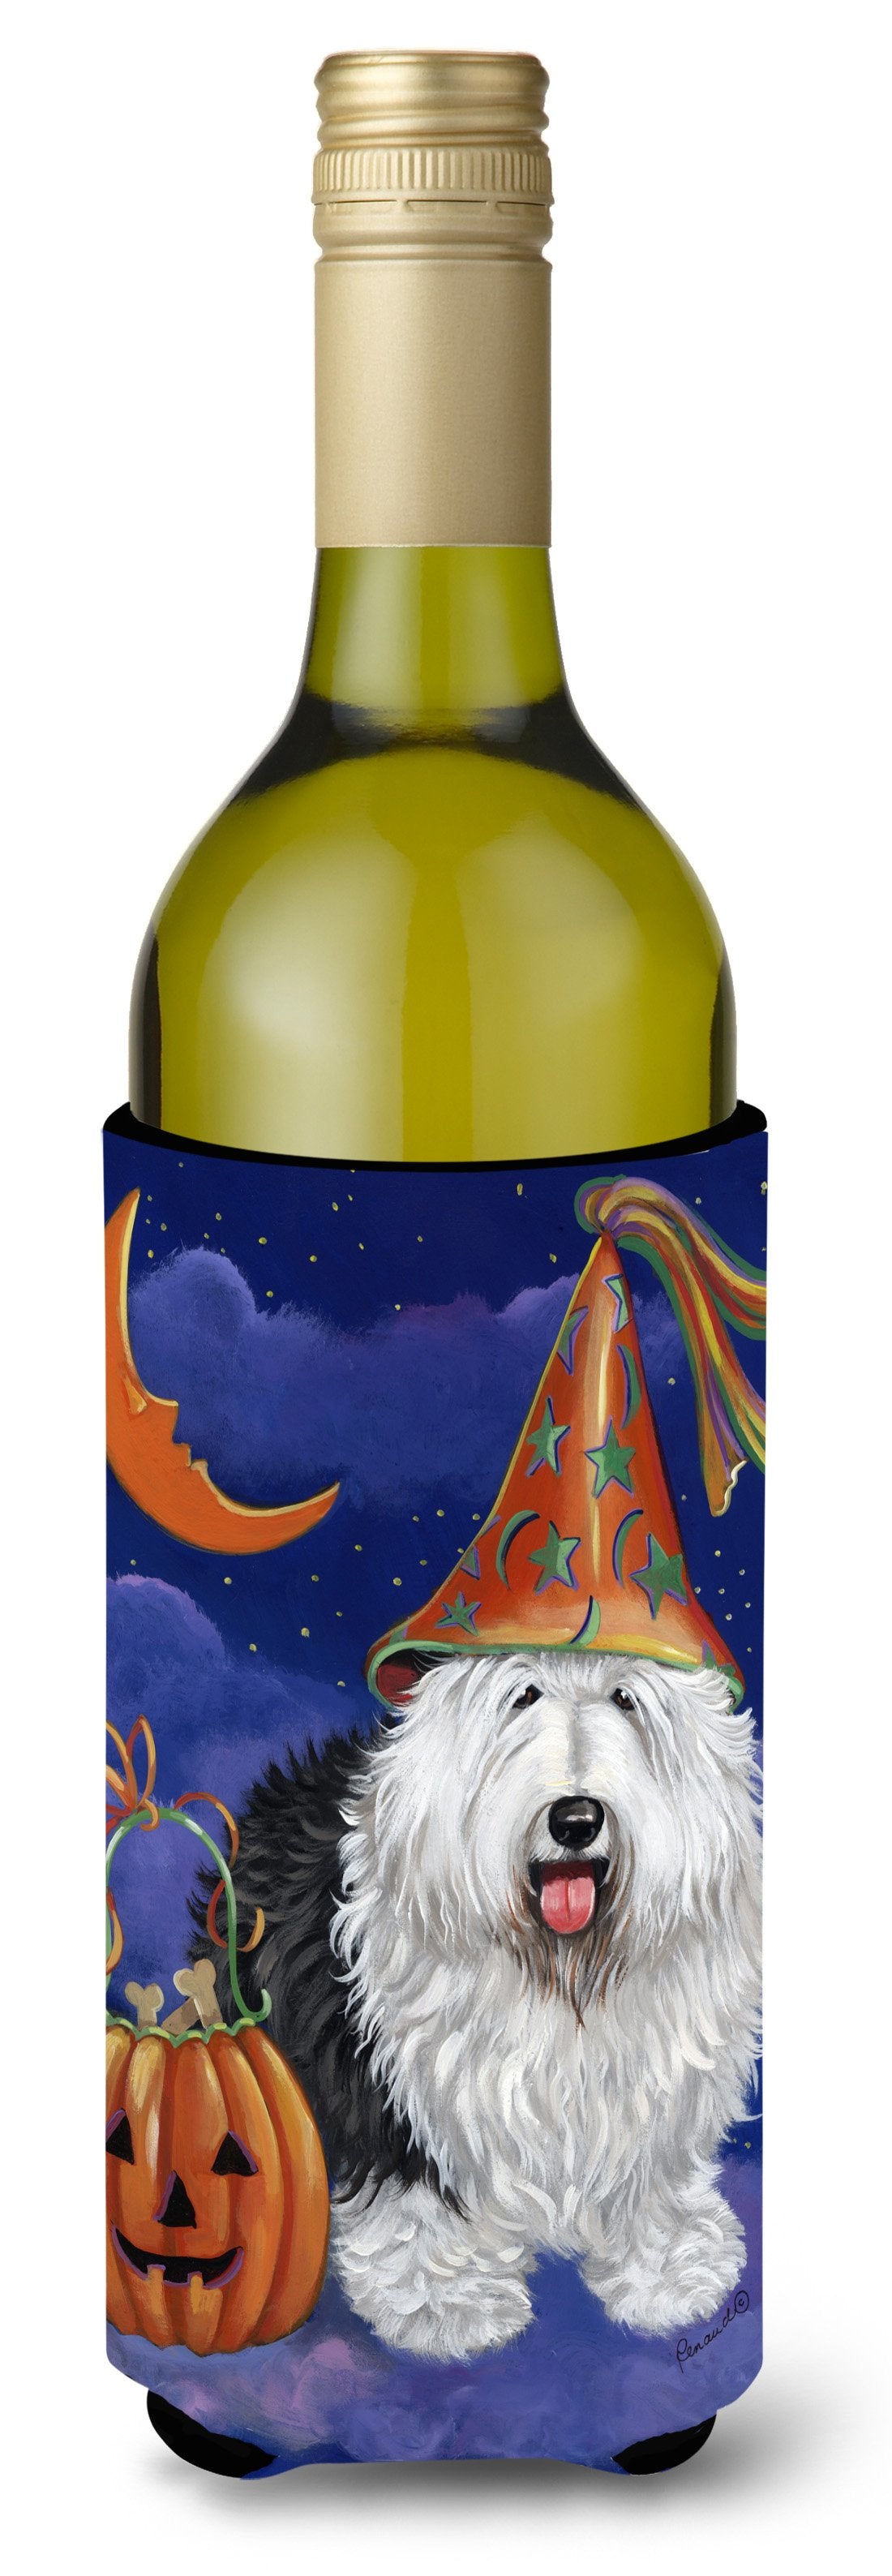 Old English Sheepdog Halloween Wine Bottle Hugger PPP3118LITERK by Caroline's Treasures